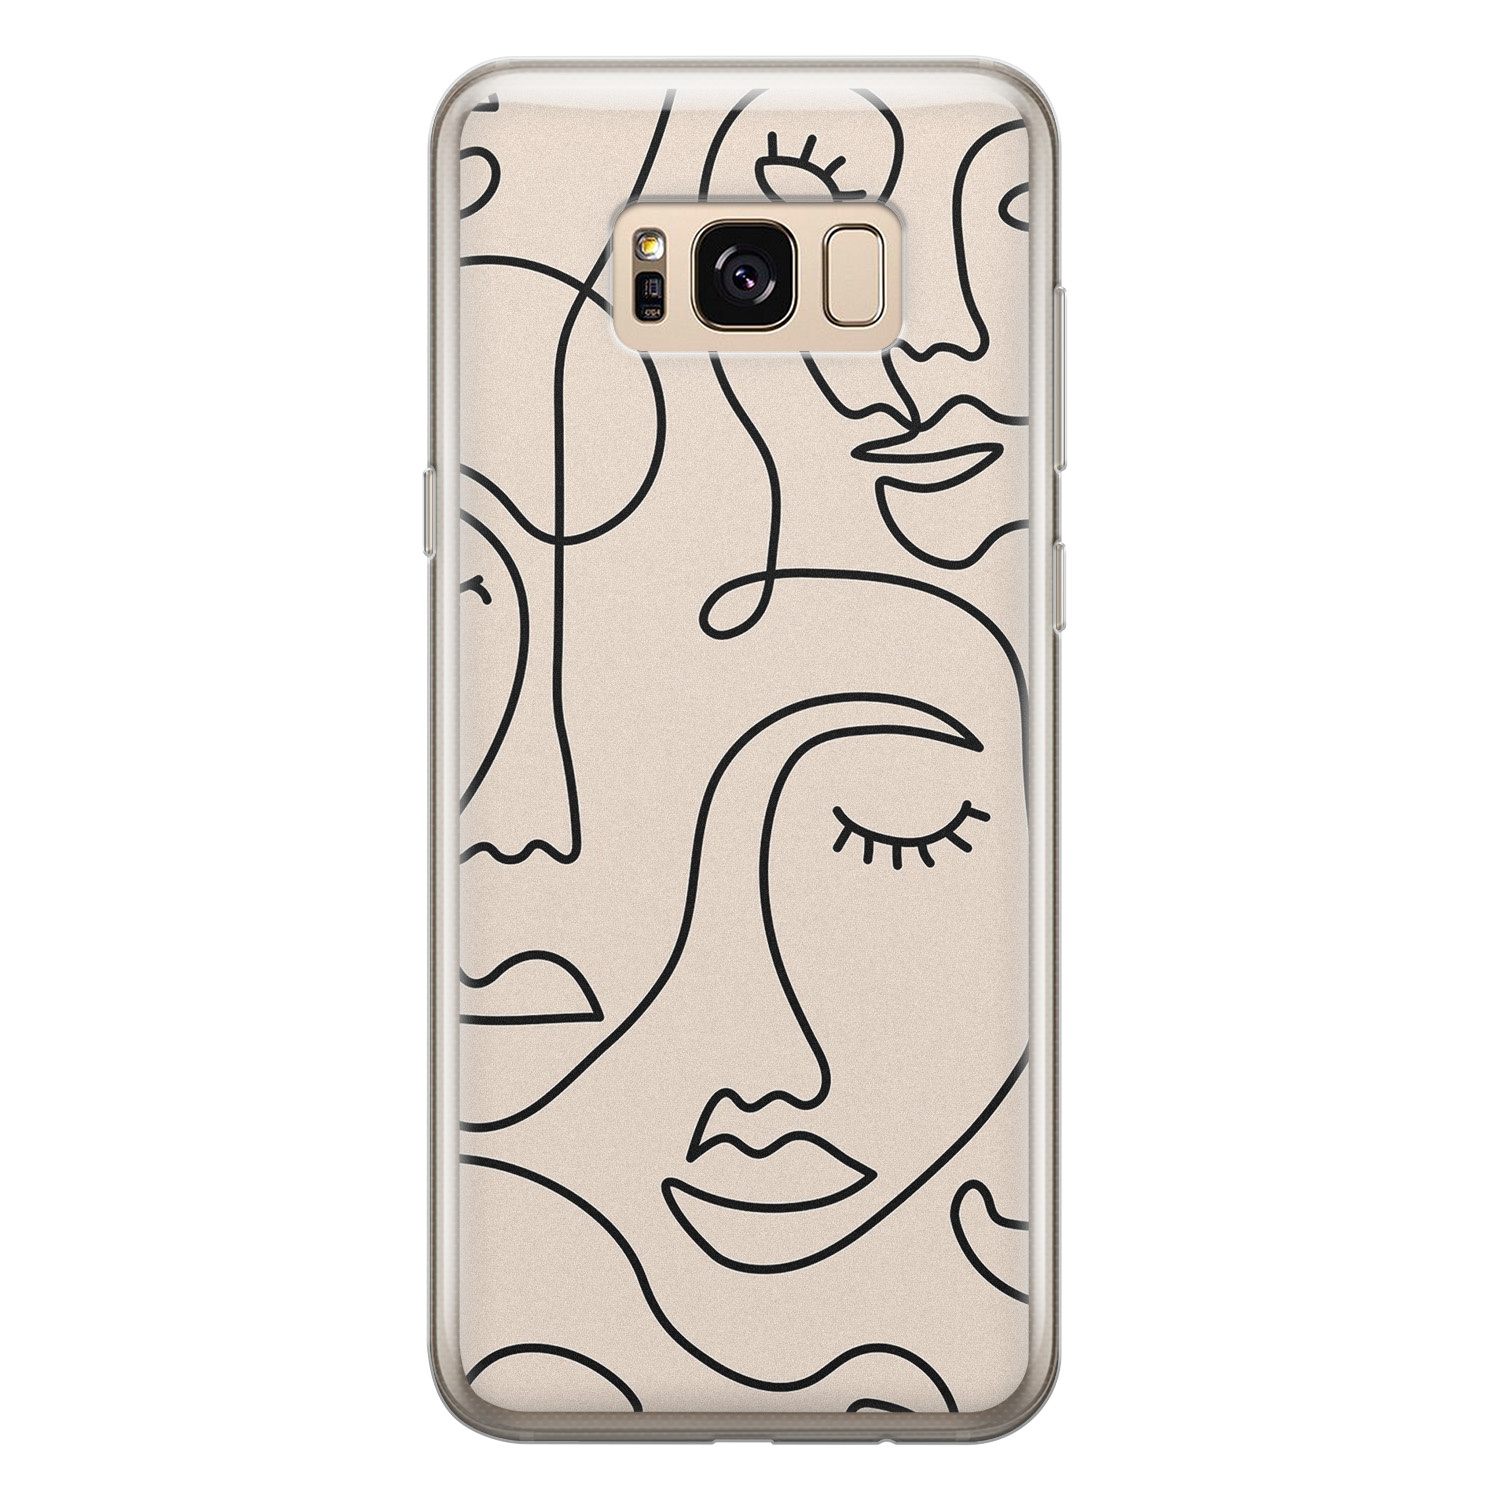 Leuke Telefoonhoesjes Samsung Galaxy S8 siliconen hoesje - Abstract gezicht lijnen